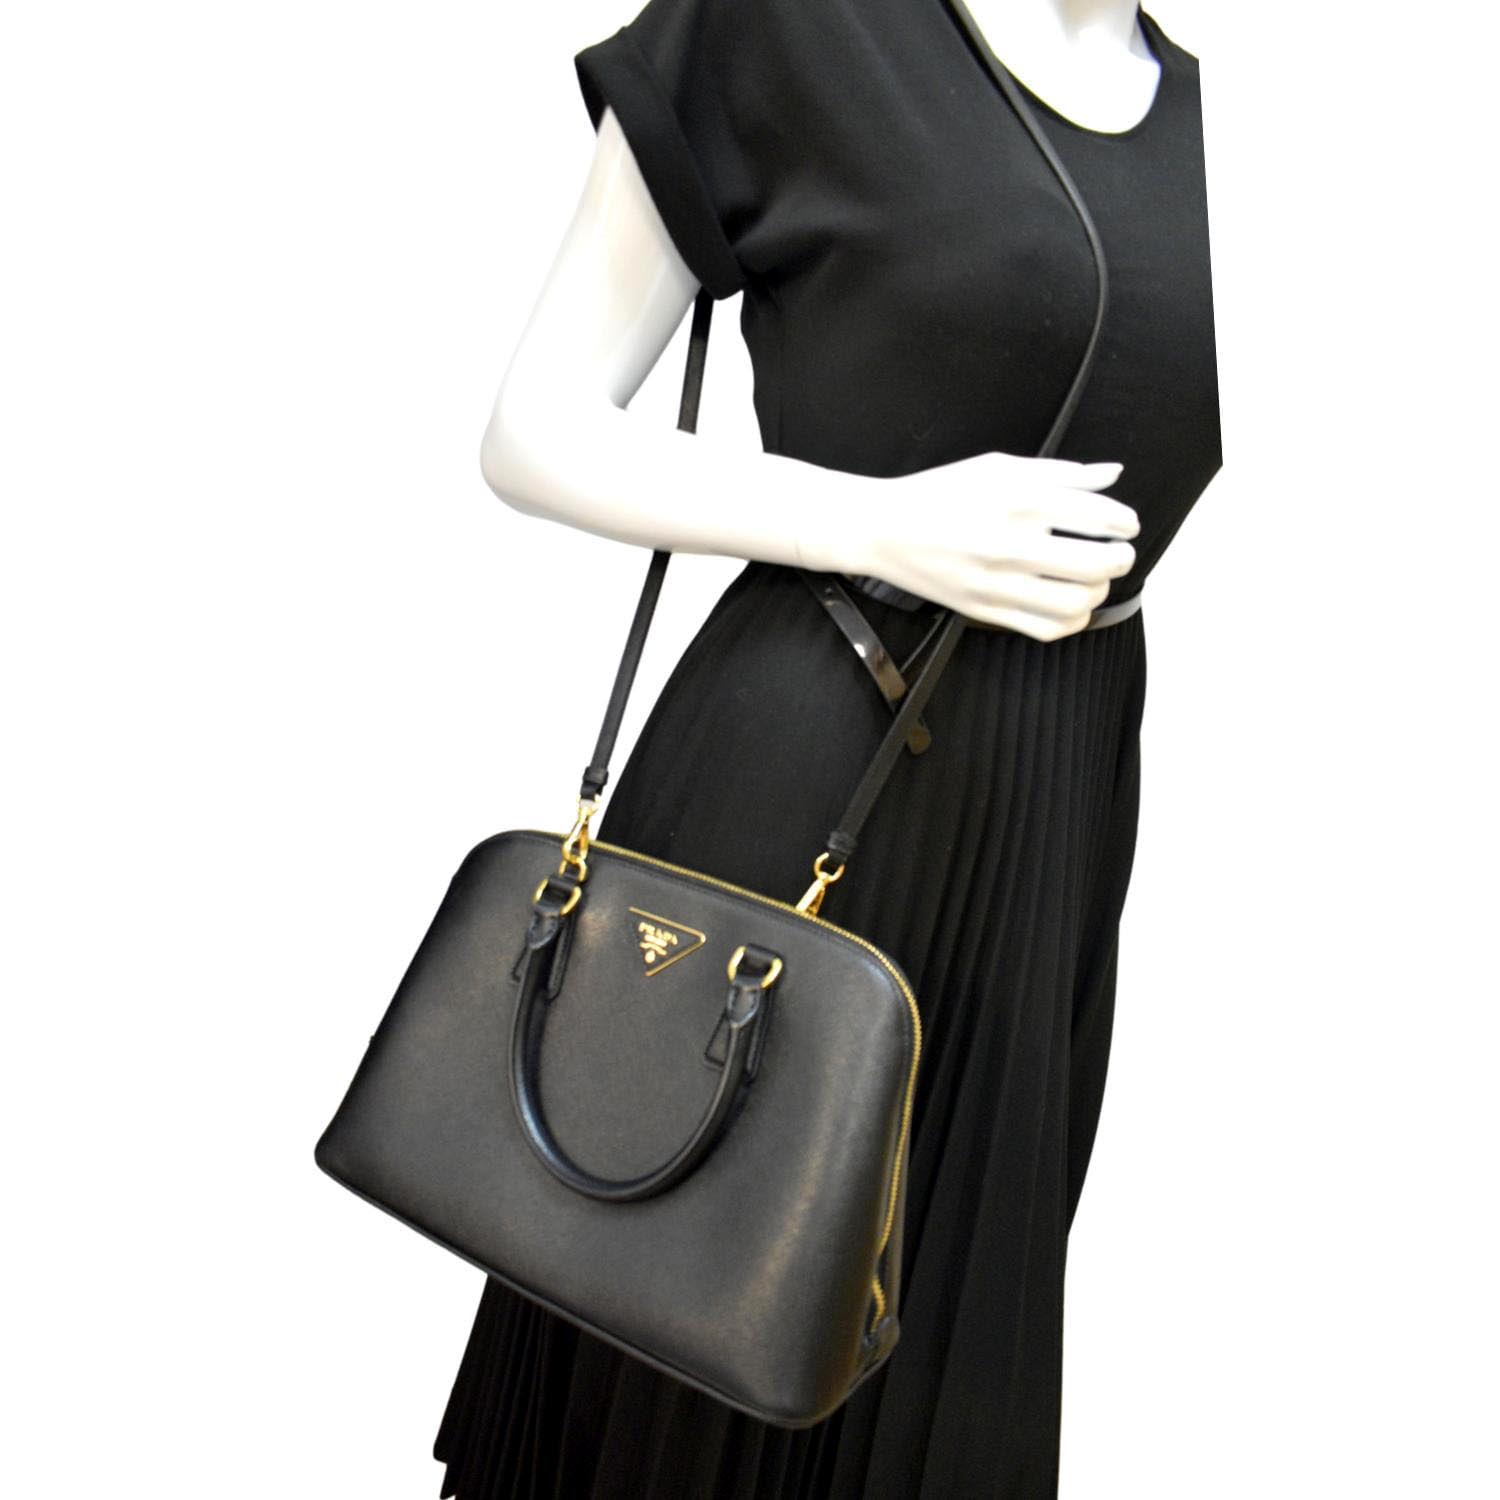 Prada Promenade Saffiano Leather Bag in Black